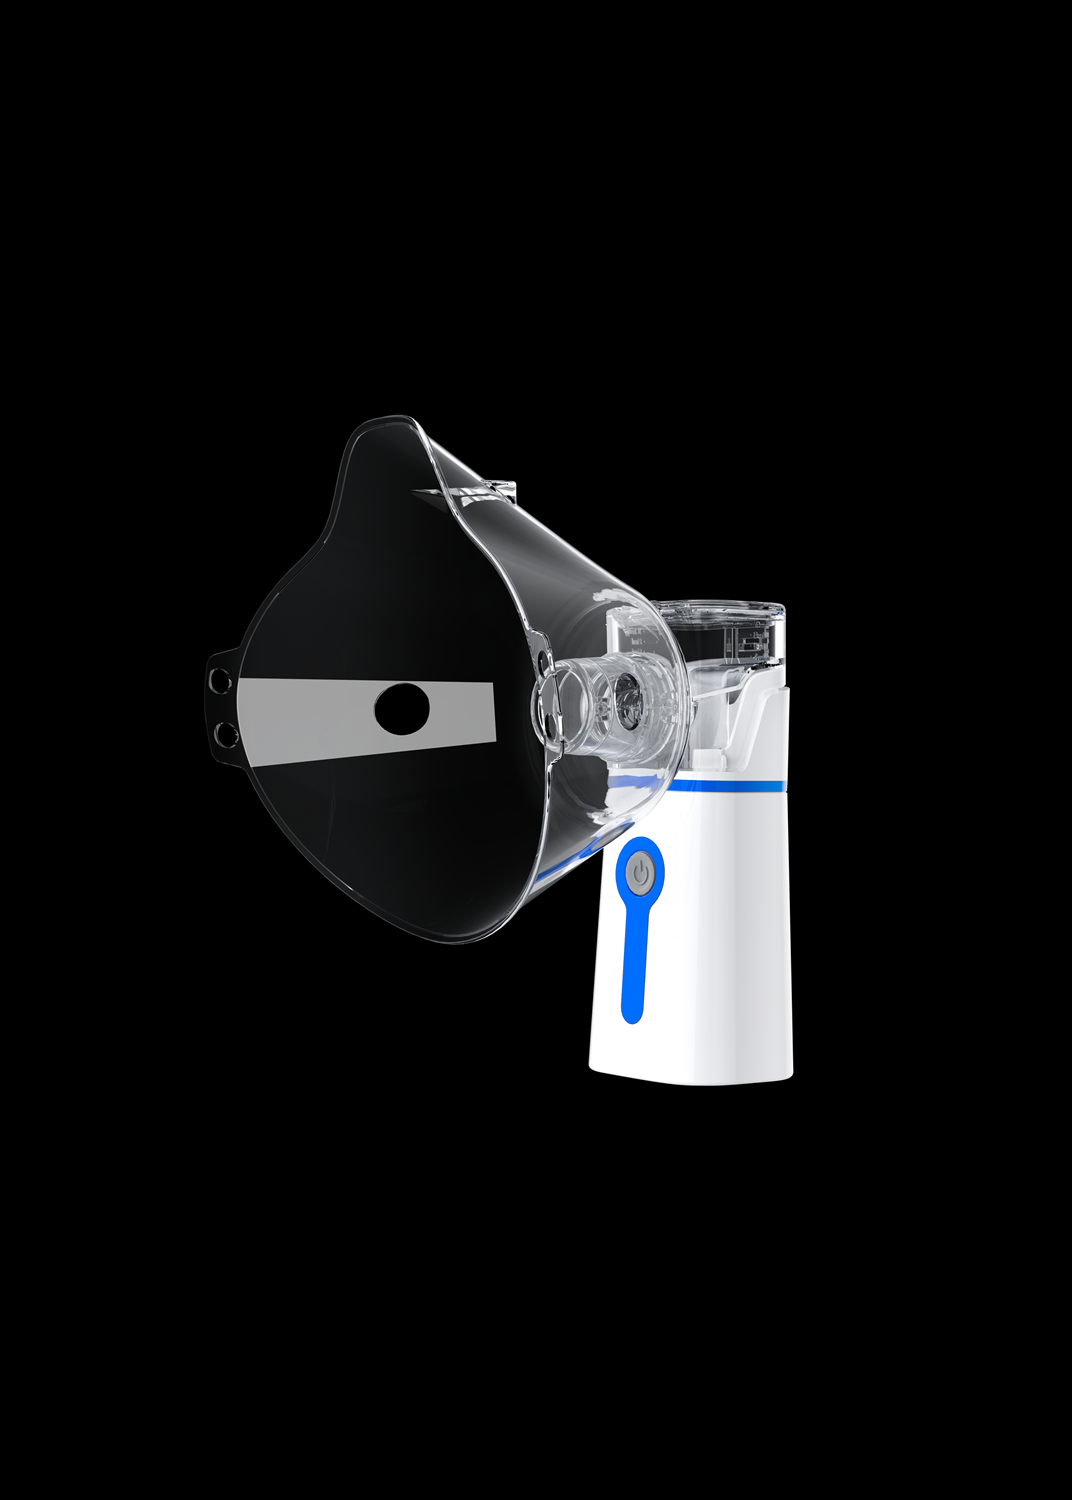 Equipo médico Nebulizador portátil de mano Nebulizador portátil ultrasónico Inhalador Nebulizador de malla para atención domiciliaria Nebulizador M202 (gris, azul)